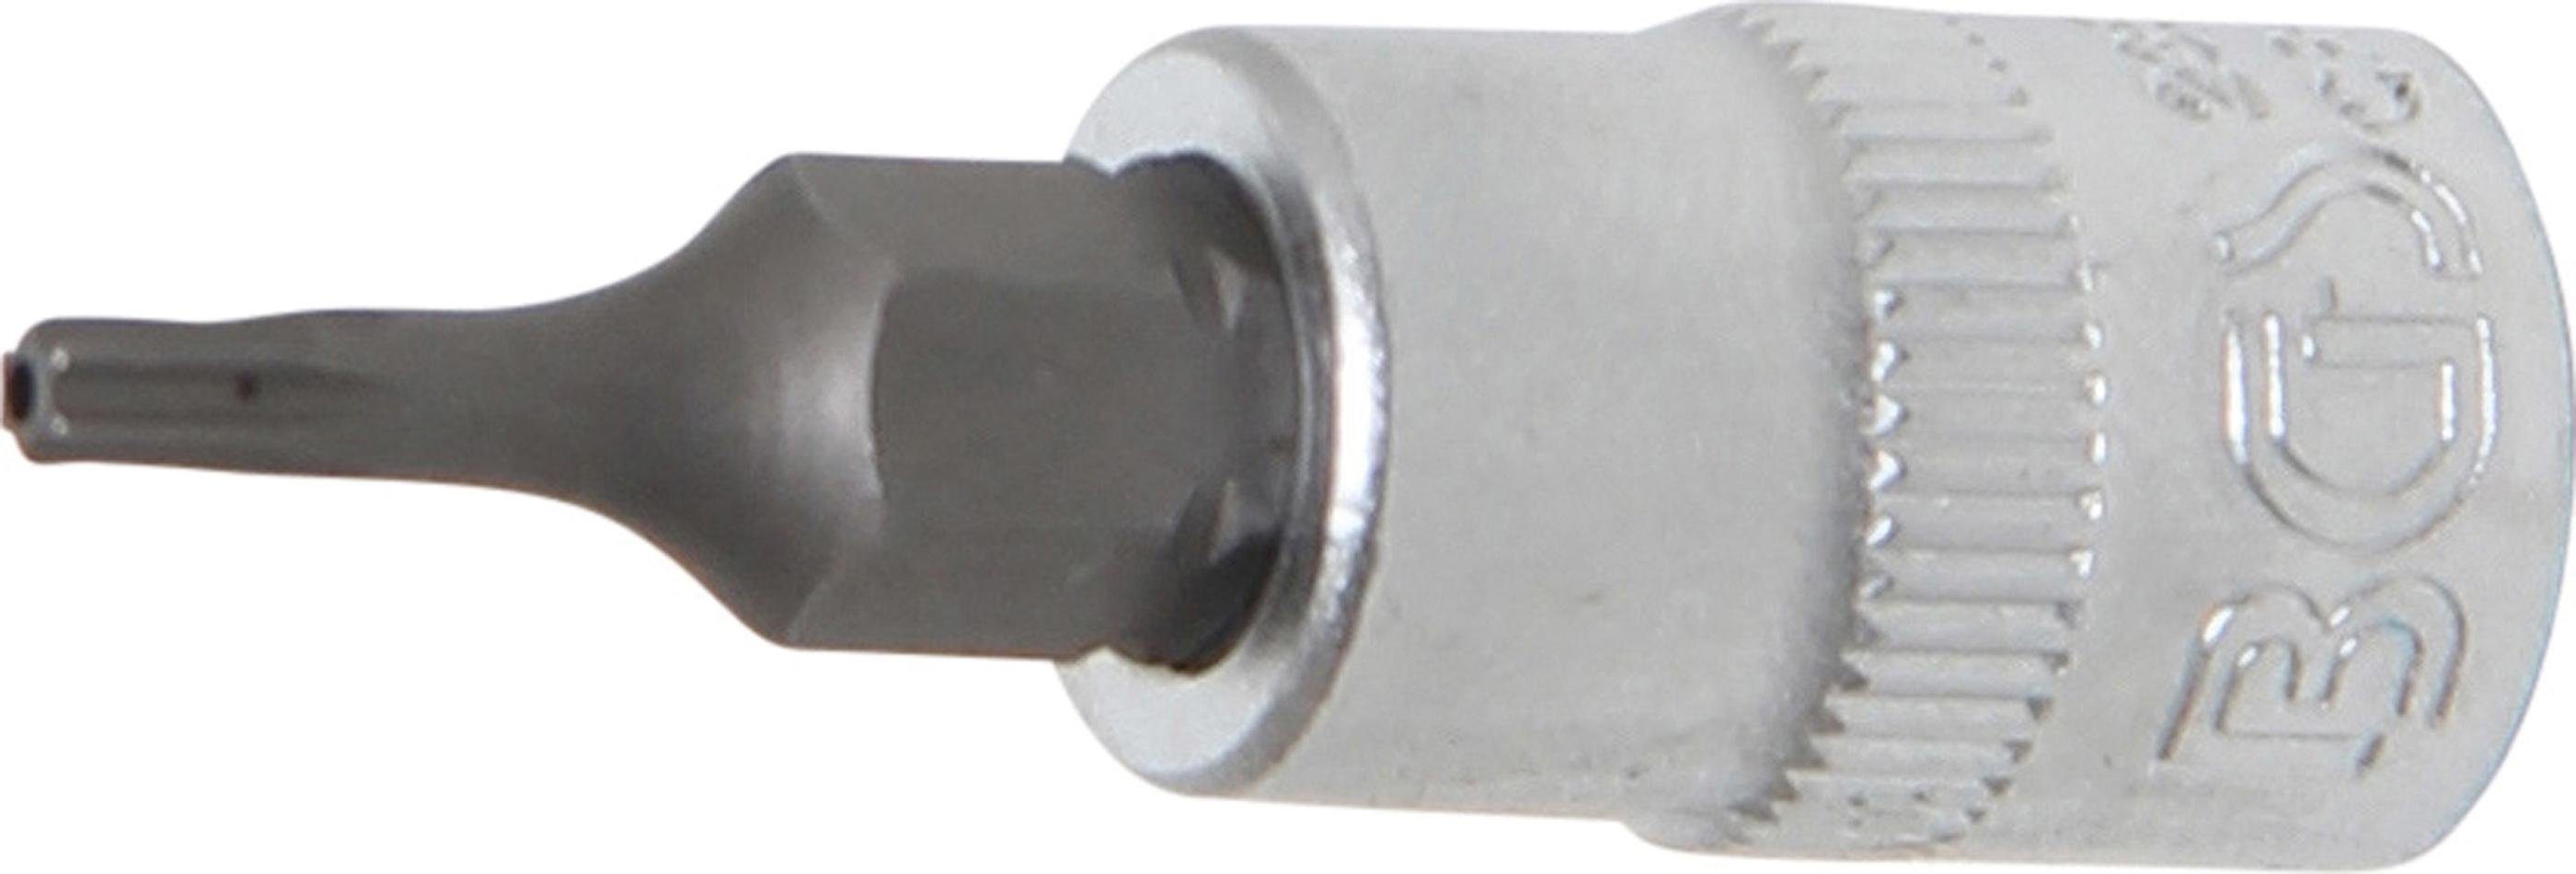 BGS technic Bit-Schraubendreher Bit-Einsatz, Antrieb Innenvierkant 6,3 mm (1/4), T-Profil (für Torx) mit Bohrung T8